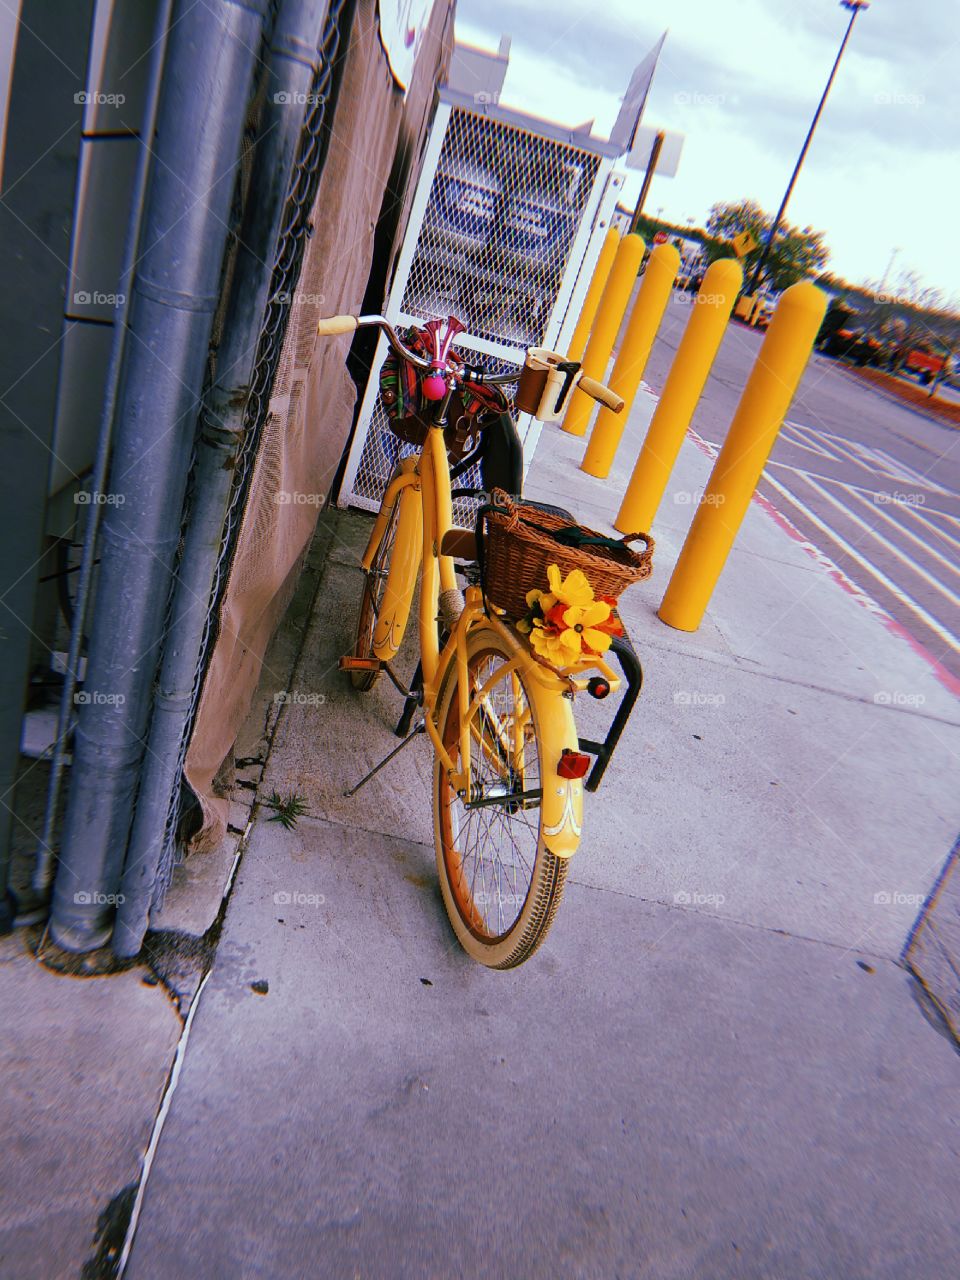 the yellow bike